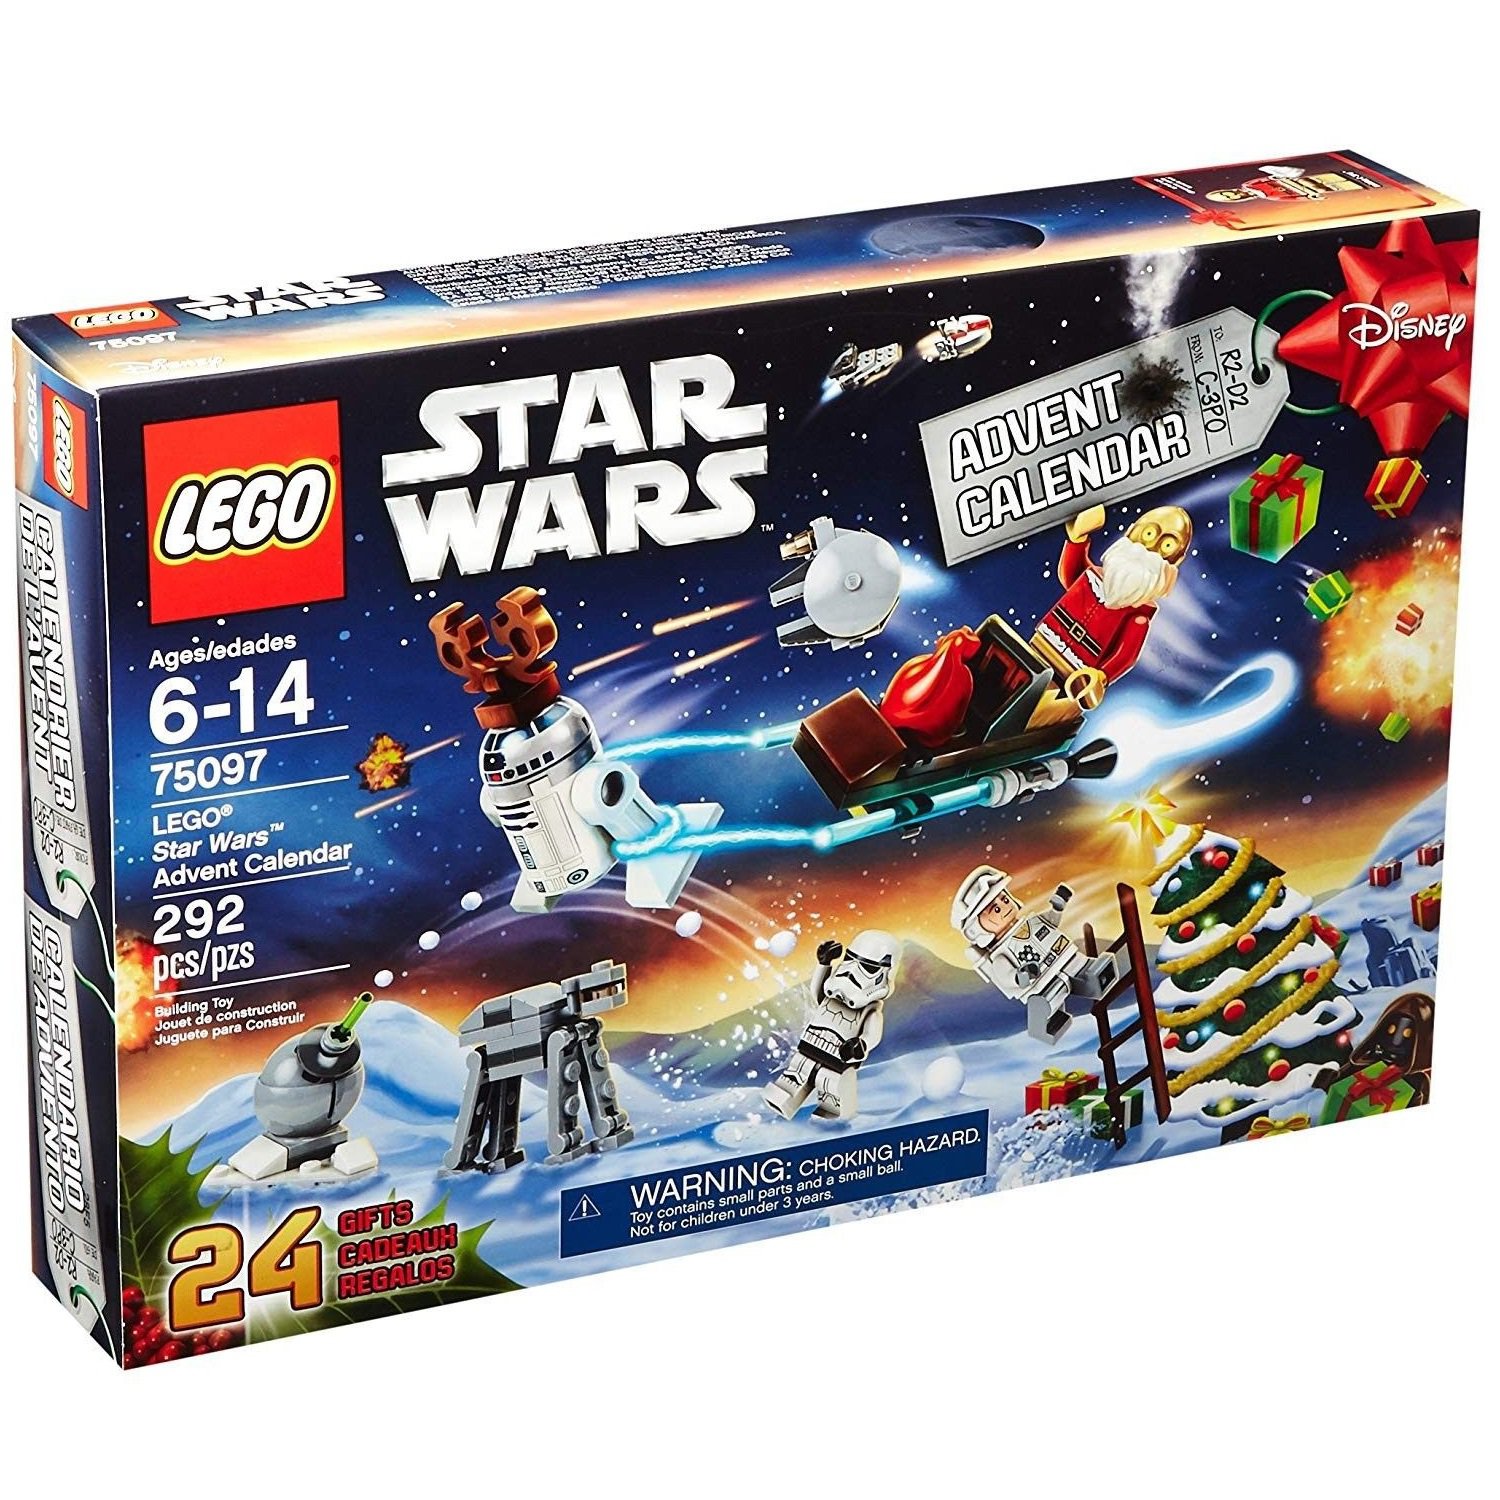 75097 Lego Star Wars Advent Calendar 2015 Year